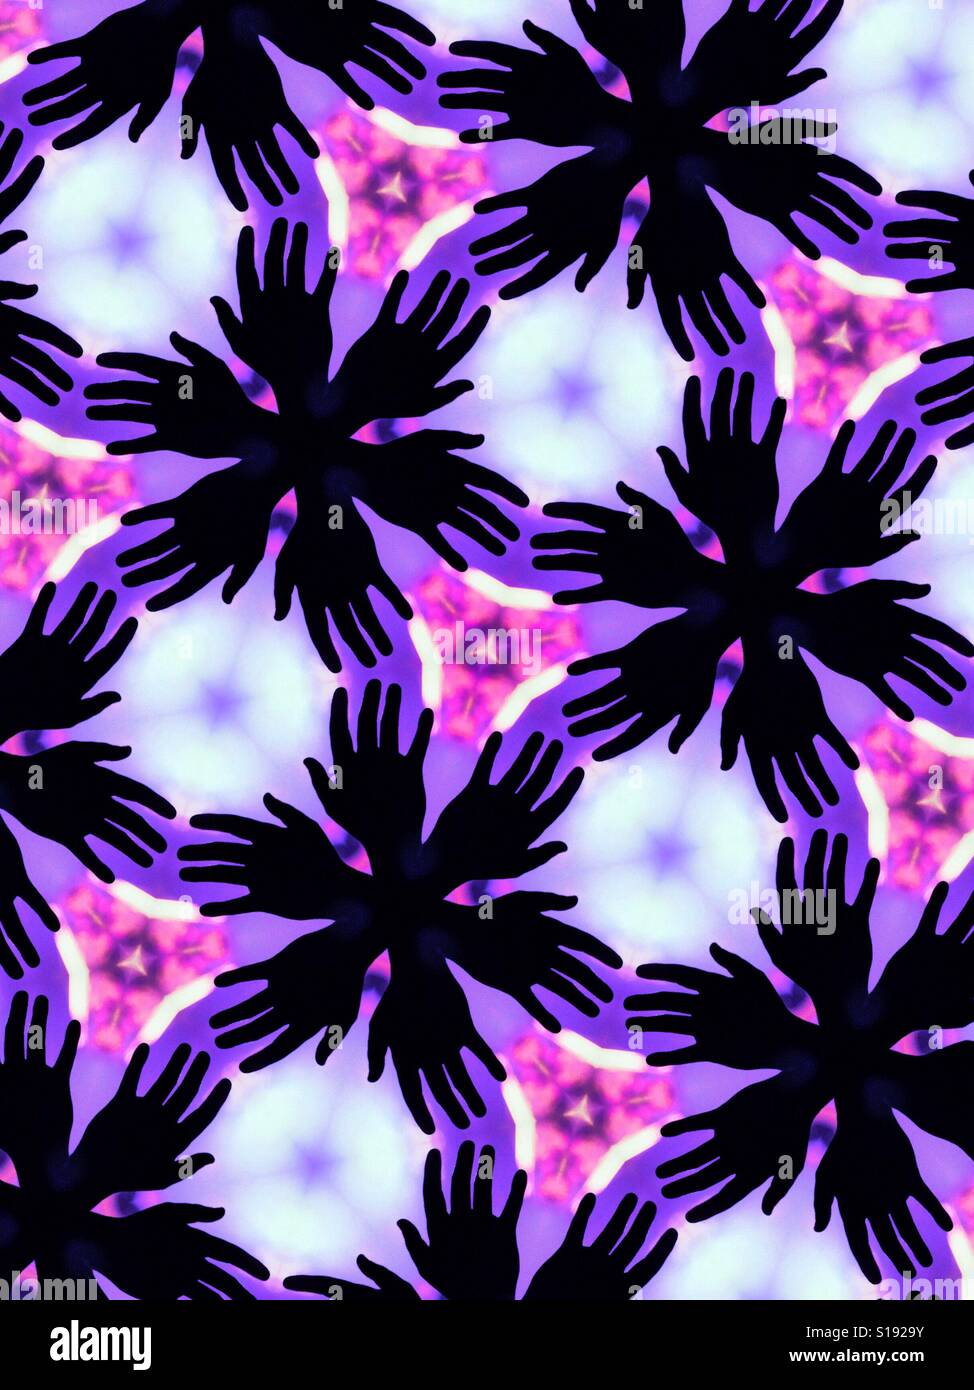 Ein abstraktes kaleidoskopartigen Bild von Silhouette ausgestreckten Händen vor einem lila Hintergrund Stockfoto